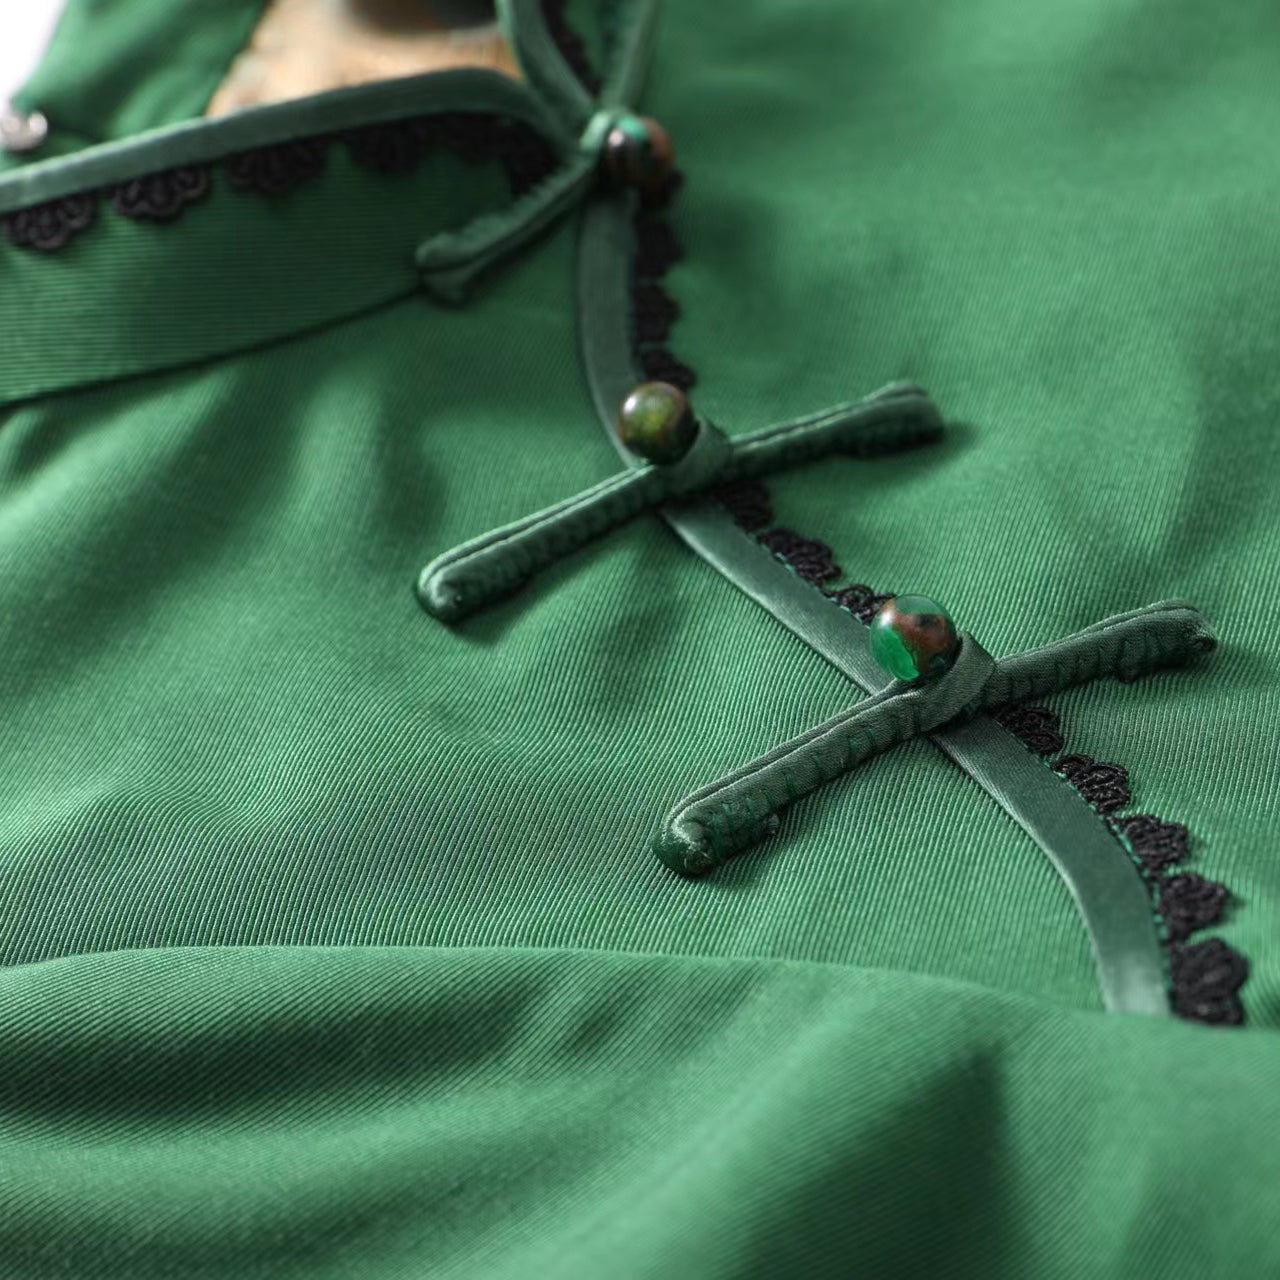 女童绿色"碧玉成妆”中式旗袍